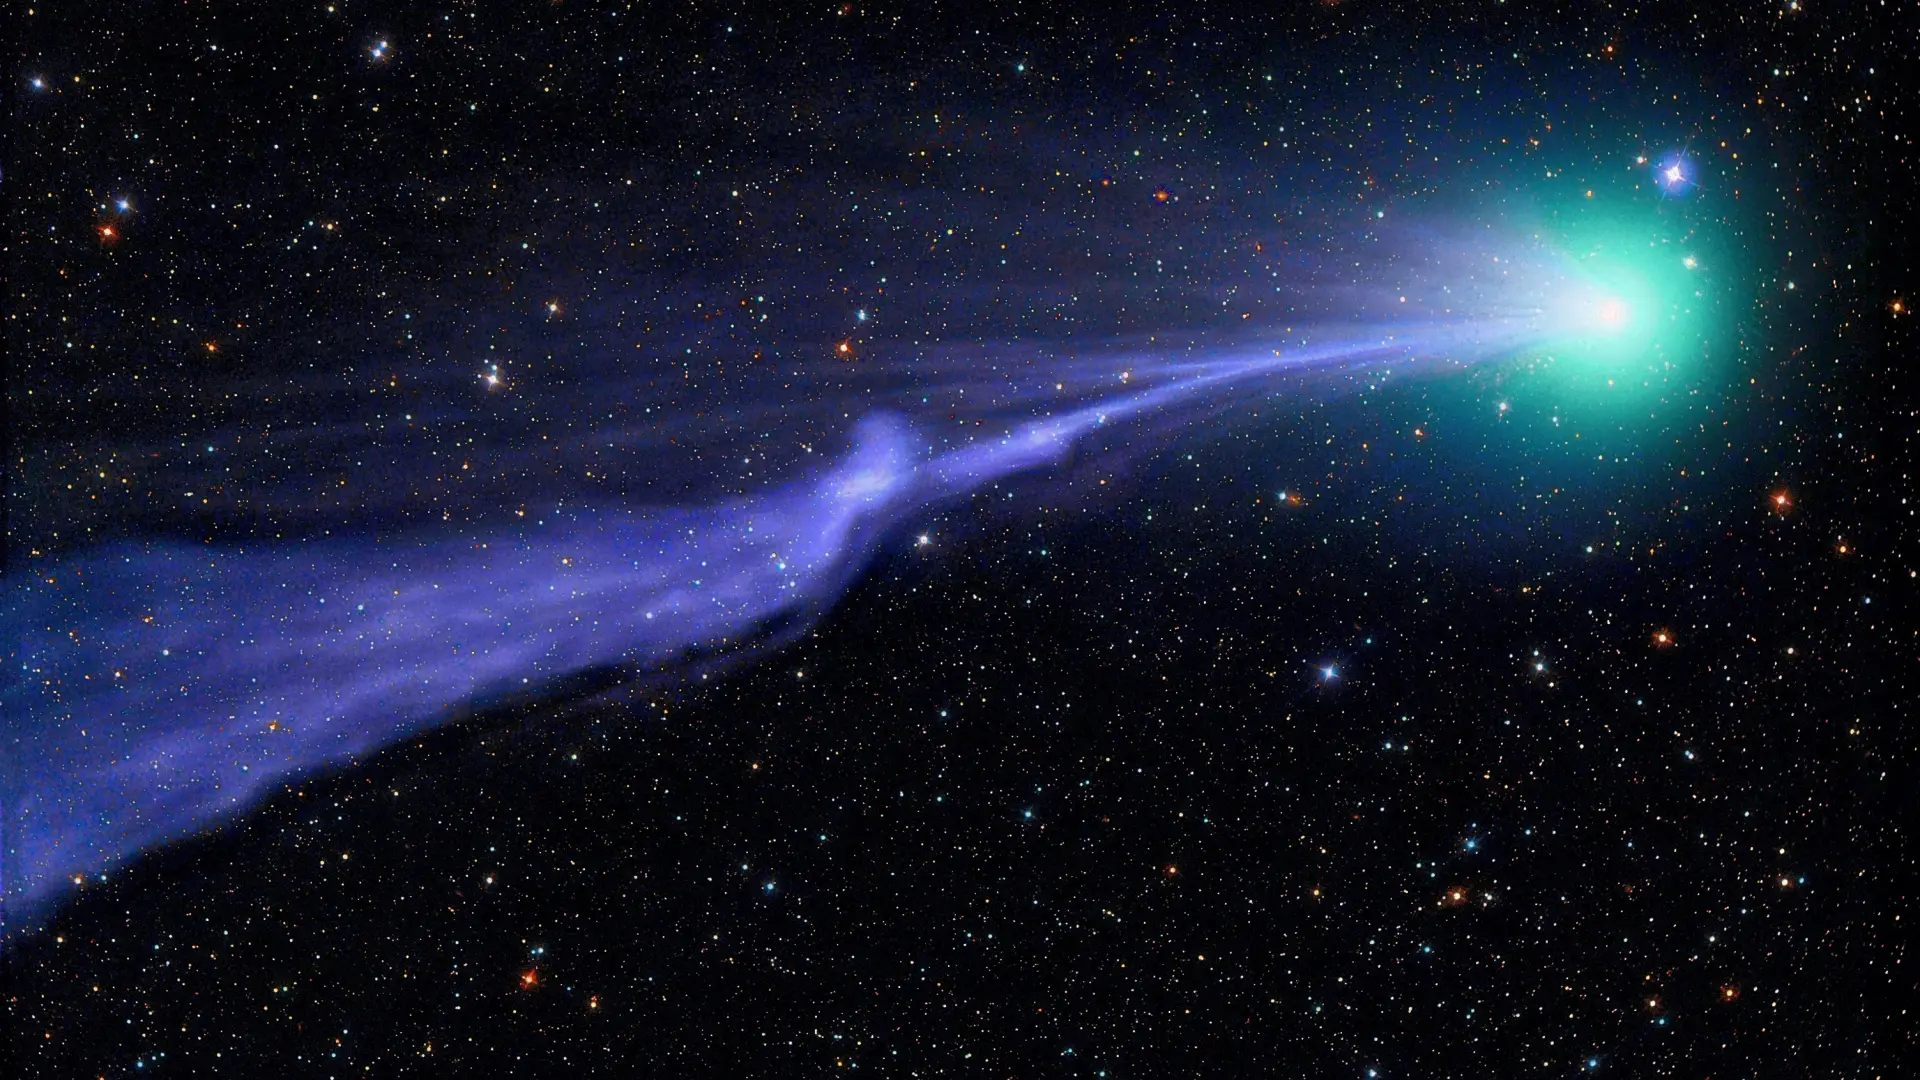 Comet speeding through space - copyright Michael Jaeger